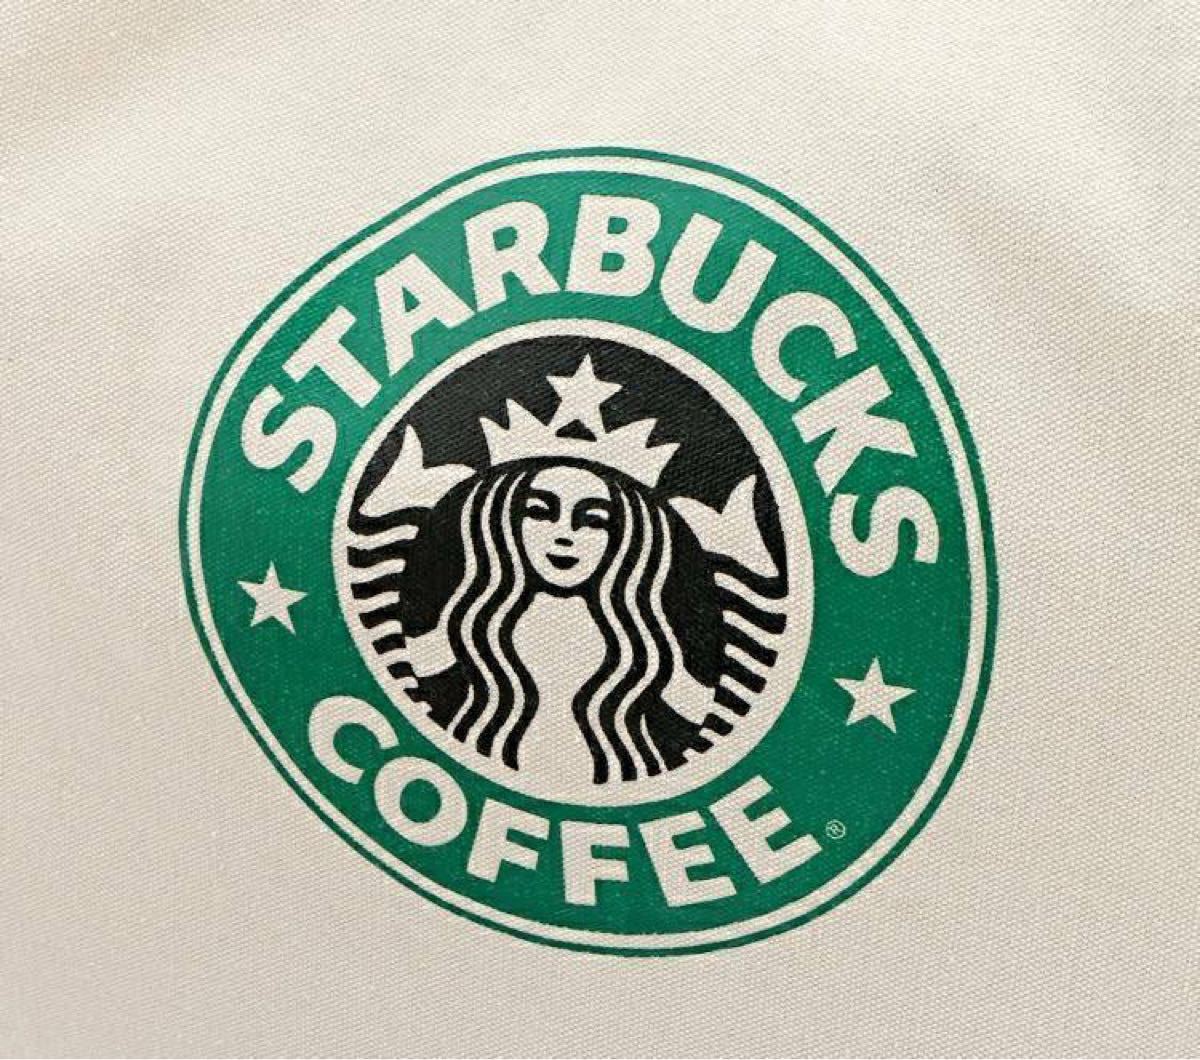 スターバックス トートバッグ キャンバストートバッグ スタバ Starbucks ショルダーバッグ 海外 人気 帆布 ホワイト